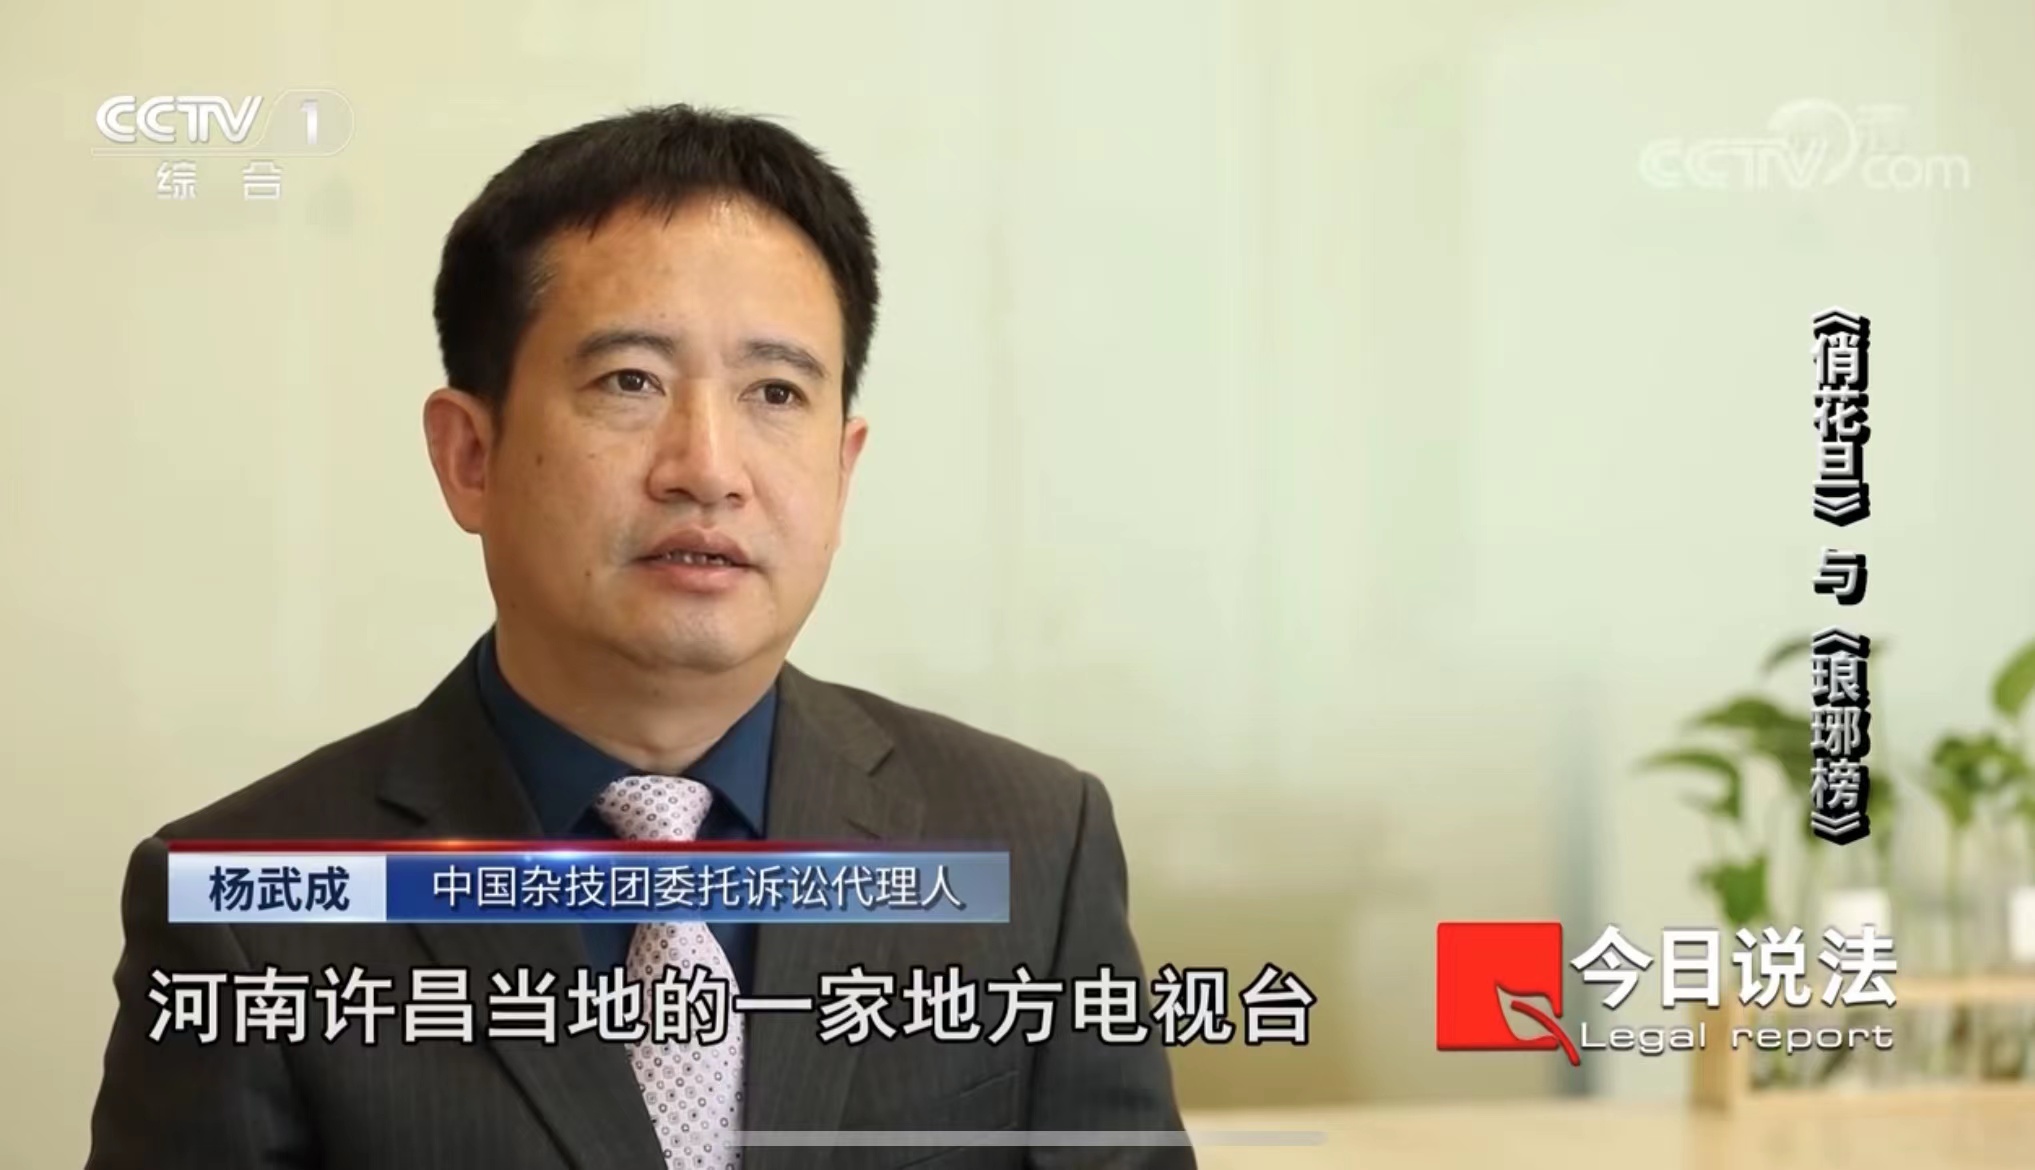 杨武成律师接受CCTV1采访